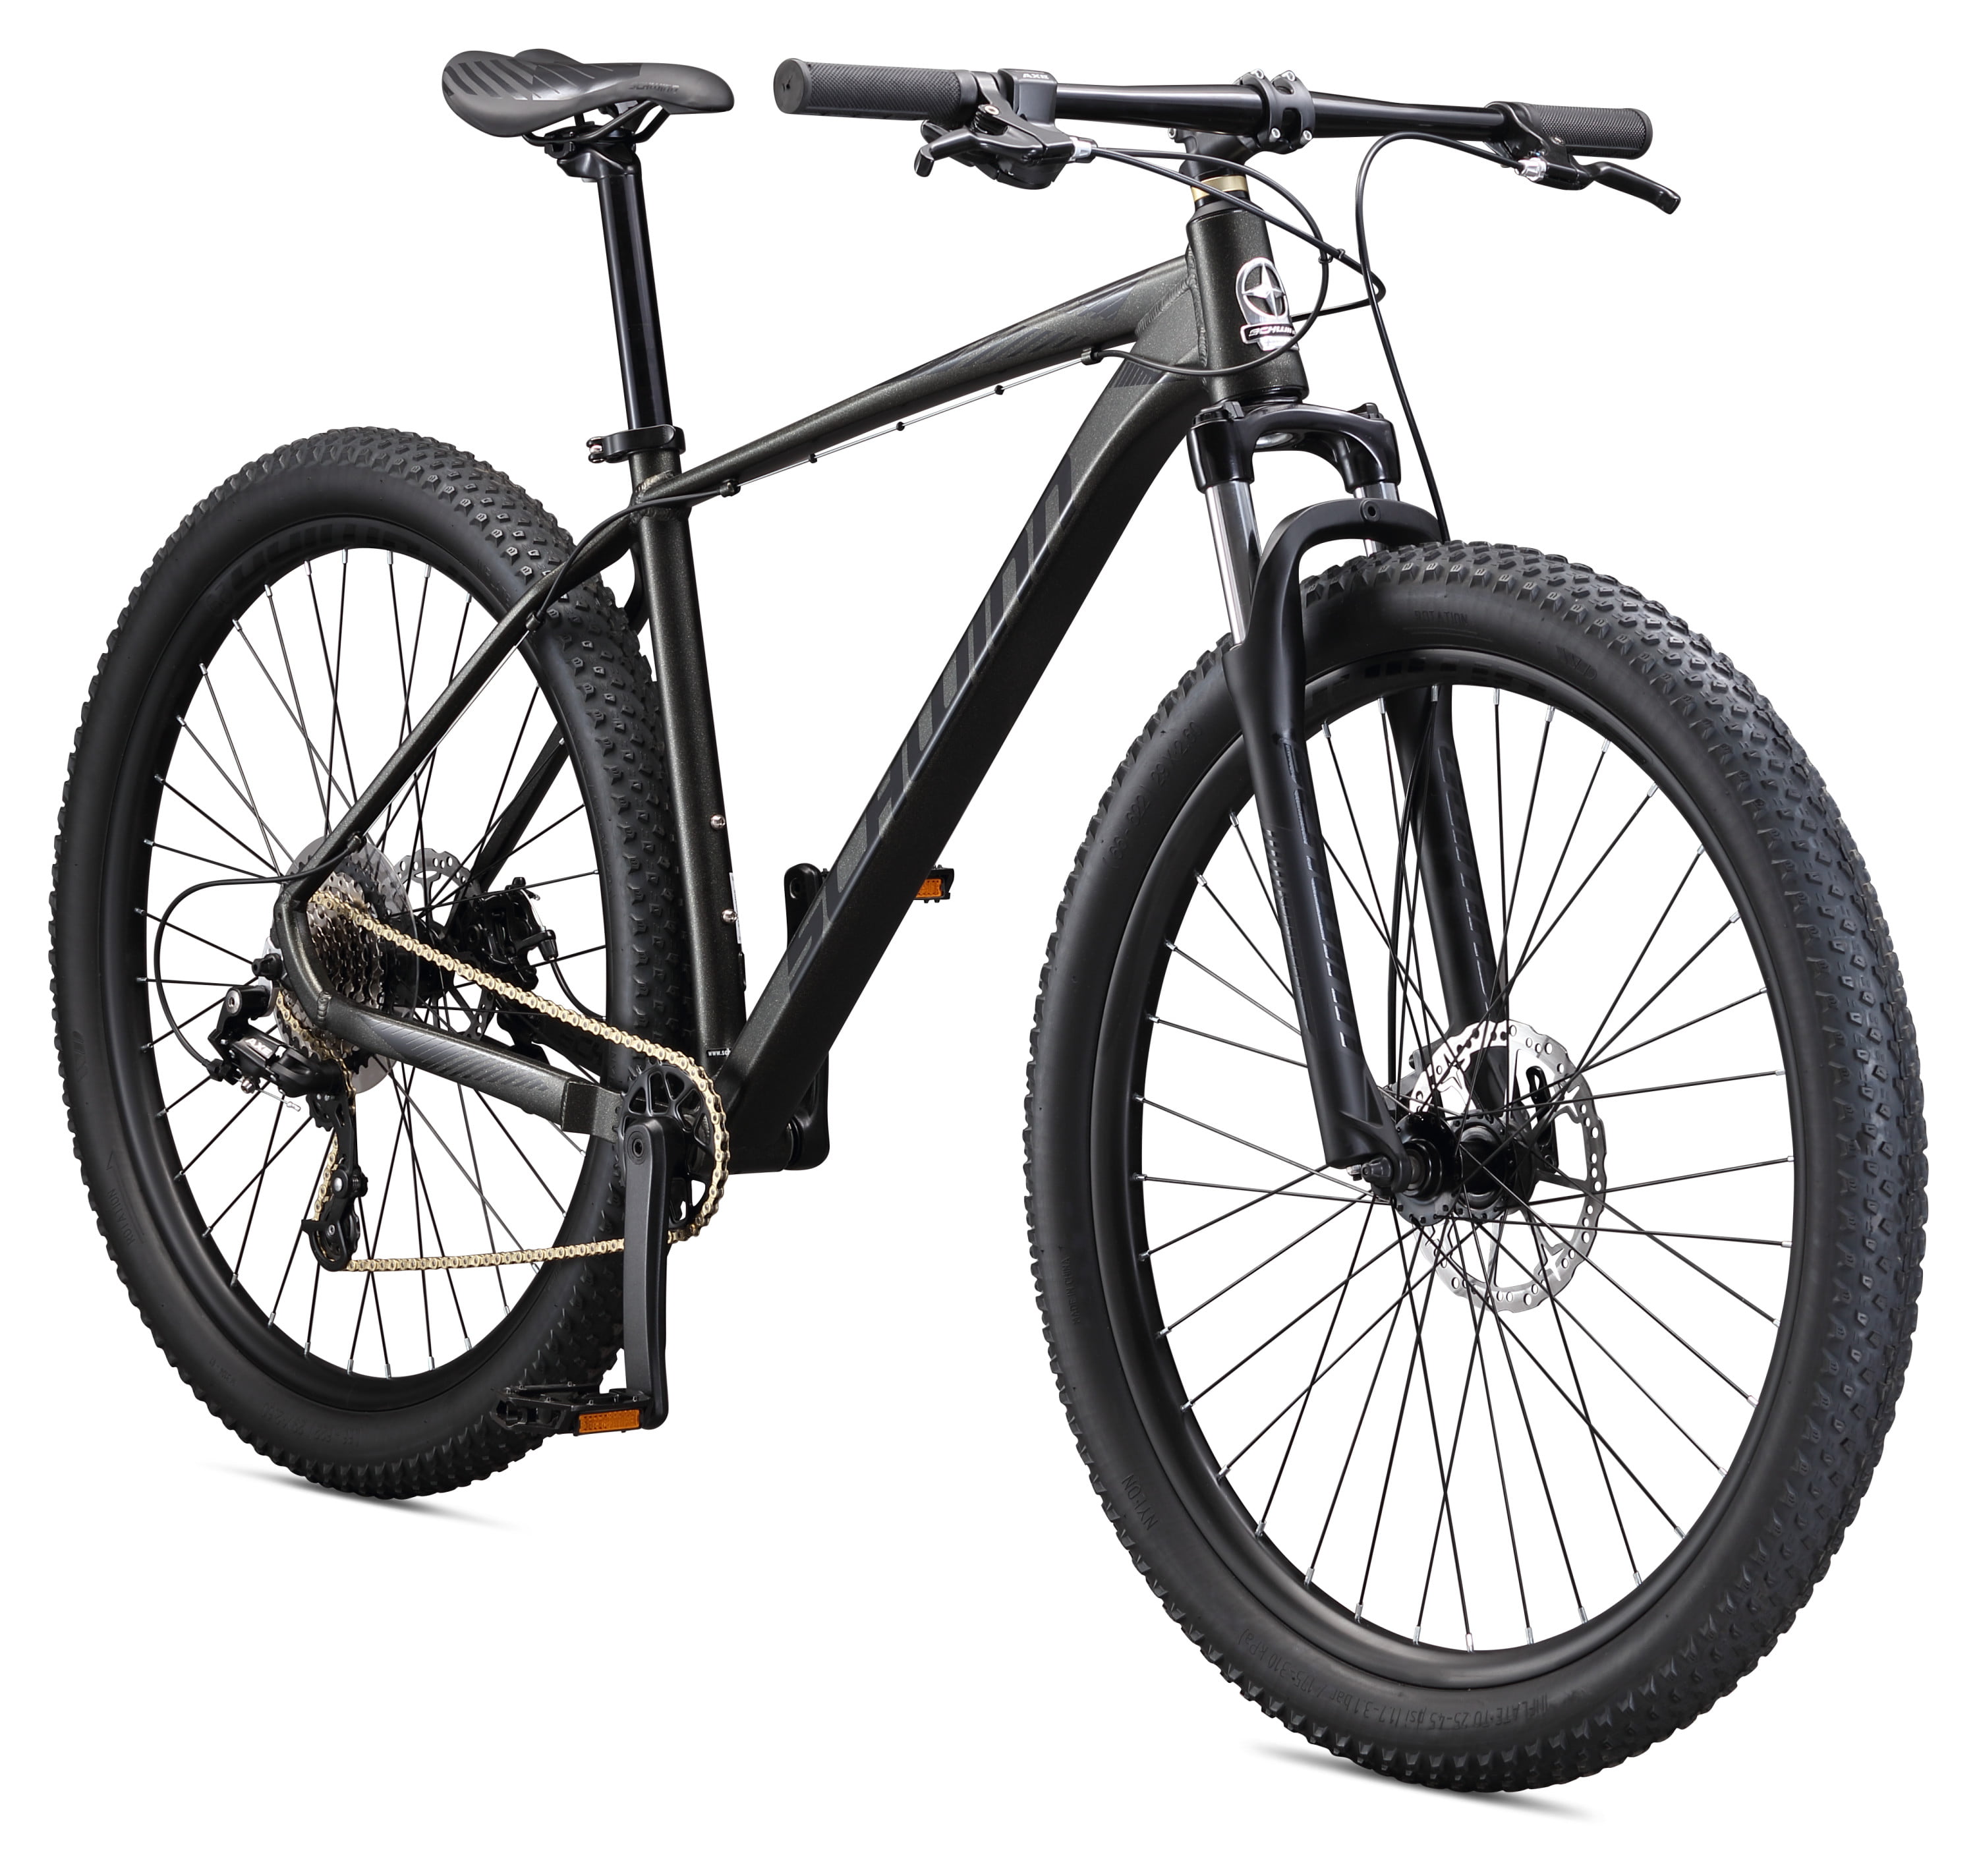 Schwinn Axum 19 Inch 8-Speed Men's Mountain Bike with 29 Inch Wheels (Black)